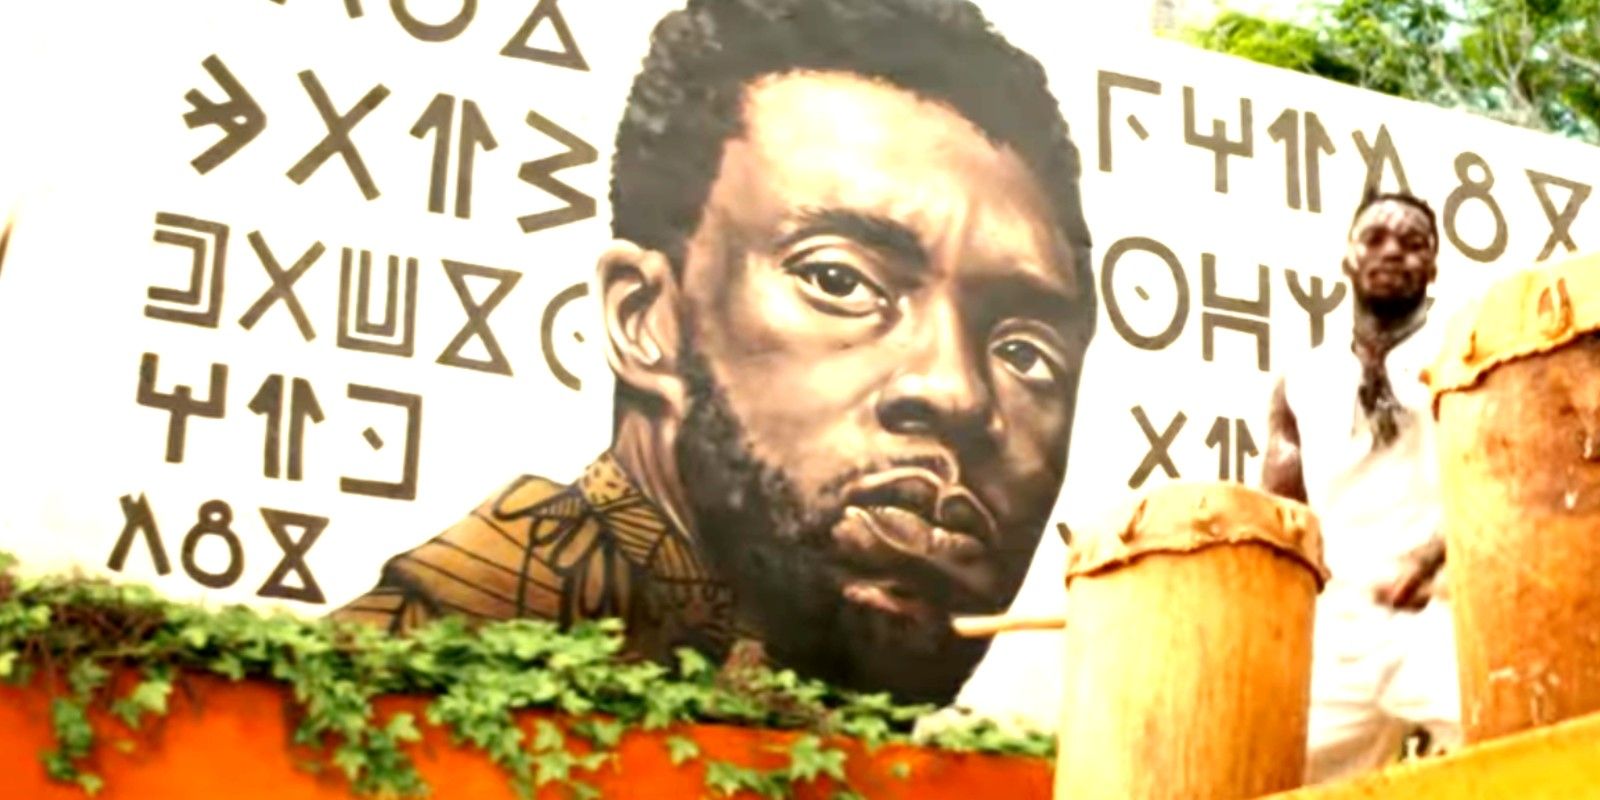 Lo que dice el tributo a Chadwick Boseman de Black Panther 2 en Wakandan